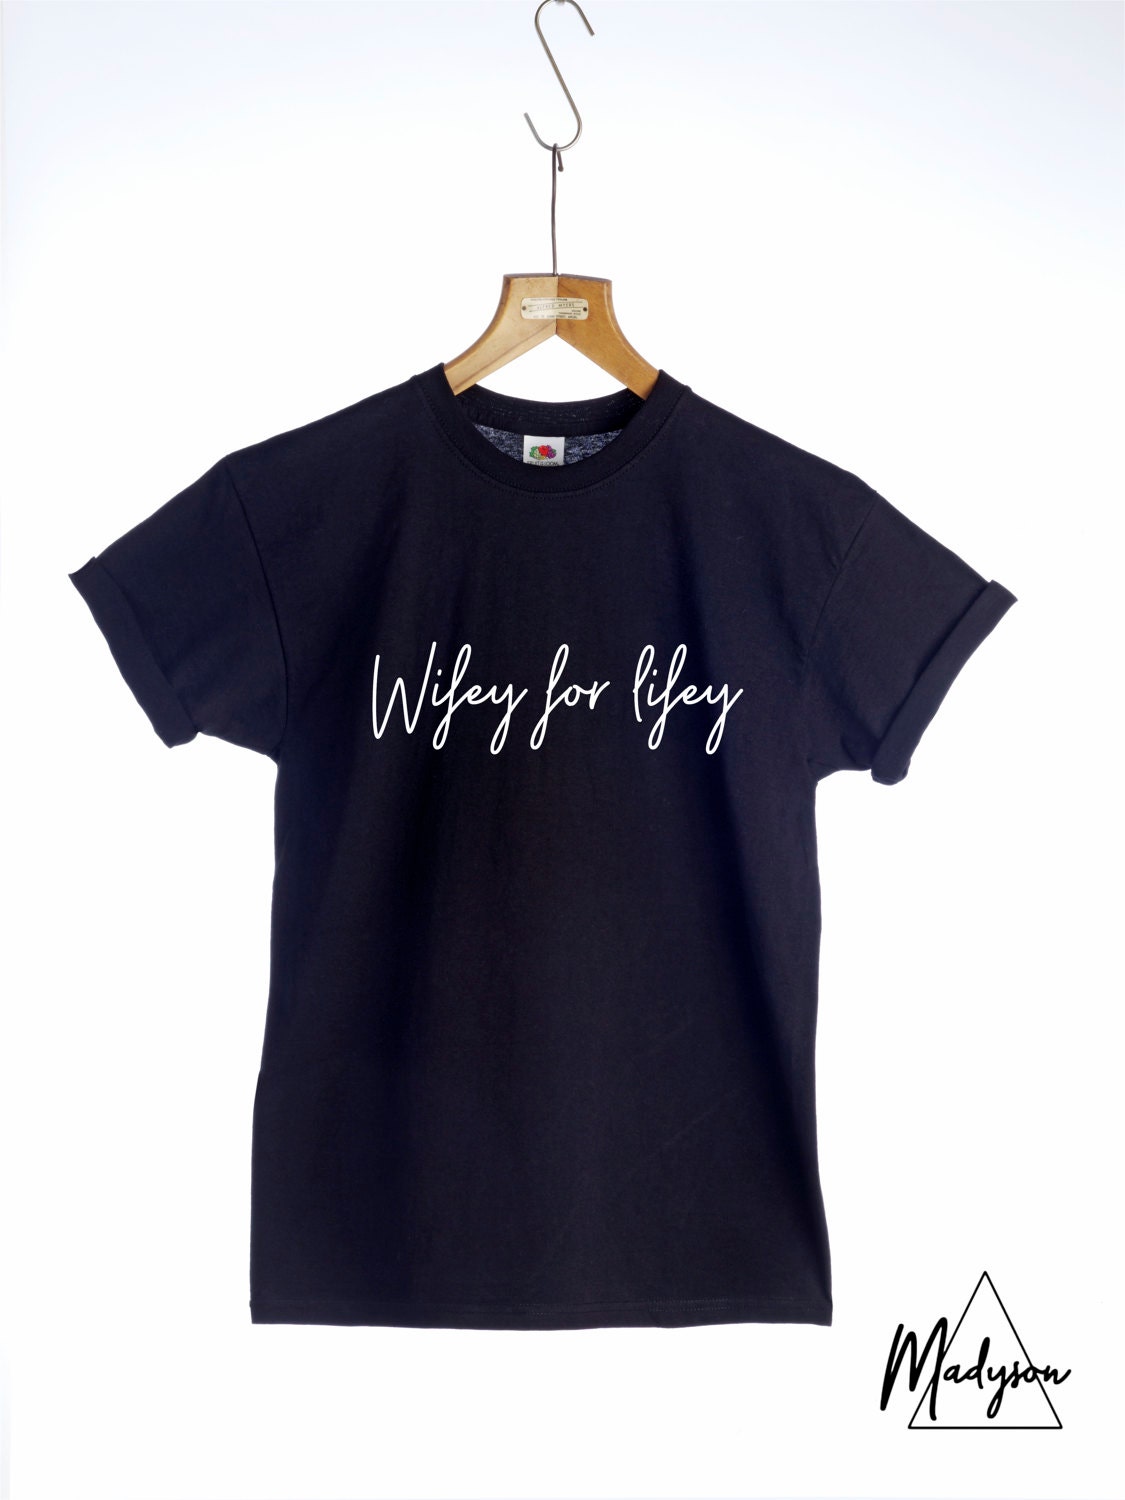 Wifey For Lifey Tshirt Wedding Anniversary Slogan t-shirt | Etsy